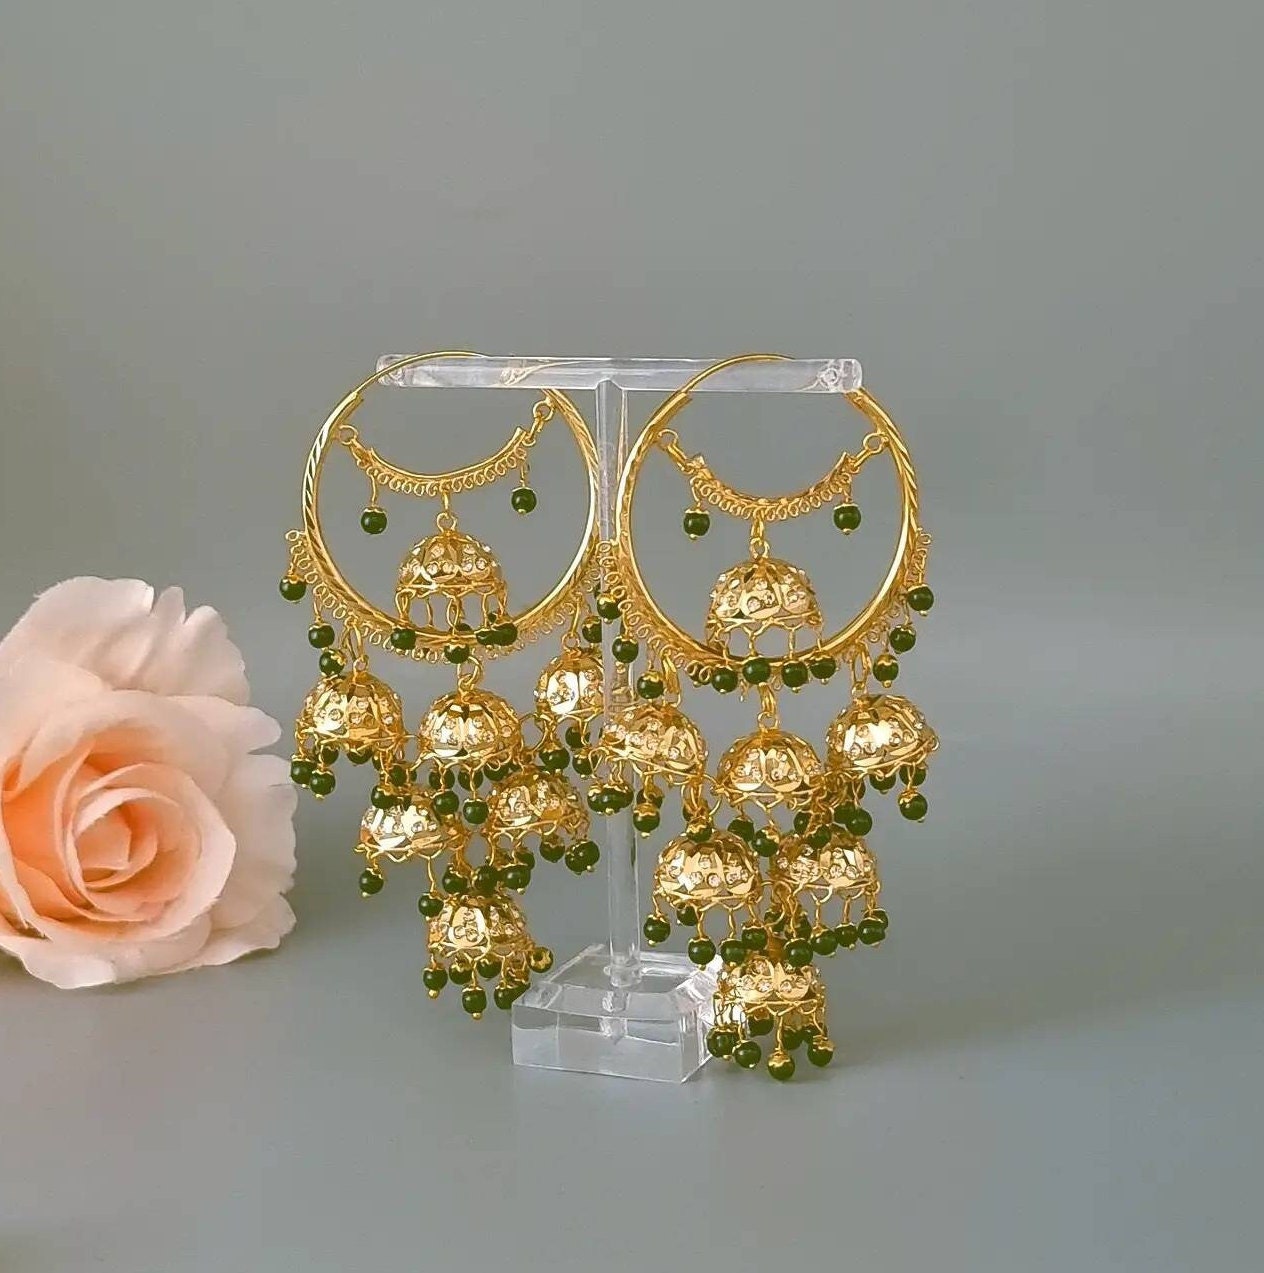 Buy Round Pearl Hoop Earrings Artificial Pearls, Gold Plated Simple Charm  Hoops, Lightweight Minimal Jewellery, Handmade in Brighton UK Online in  India - Etsy